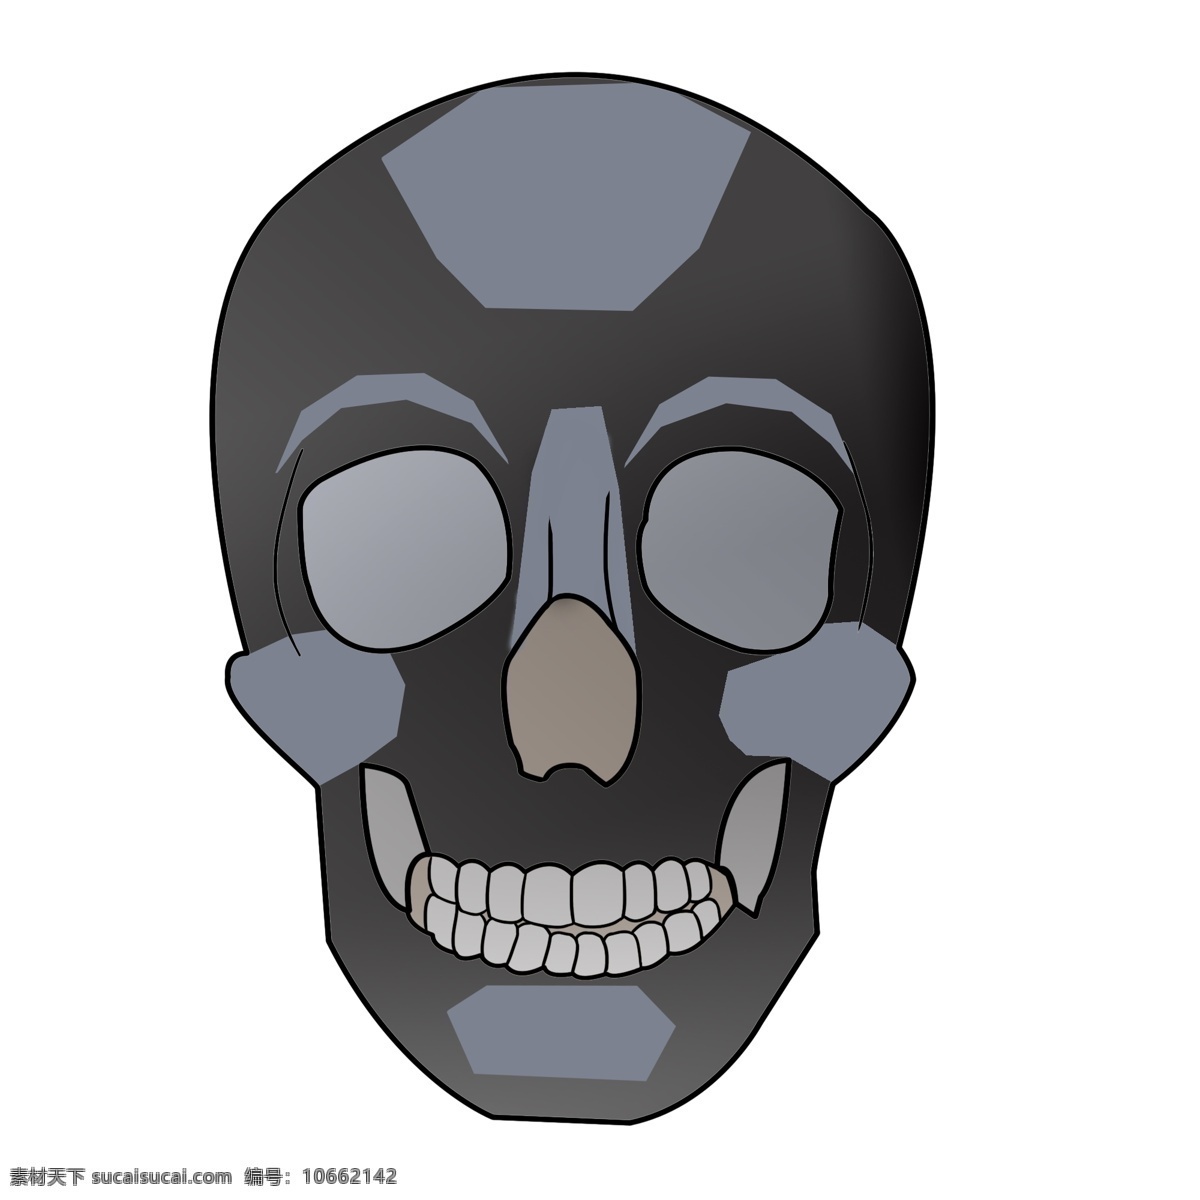 黑色 人体 骷髅 头 插图 黑色的头骨 人体器官 人体头骨 身体器官 创意头骨 装饰骷髅头 卡通 插画